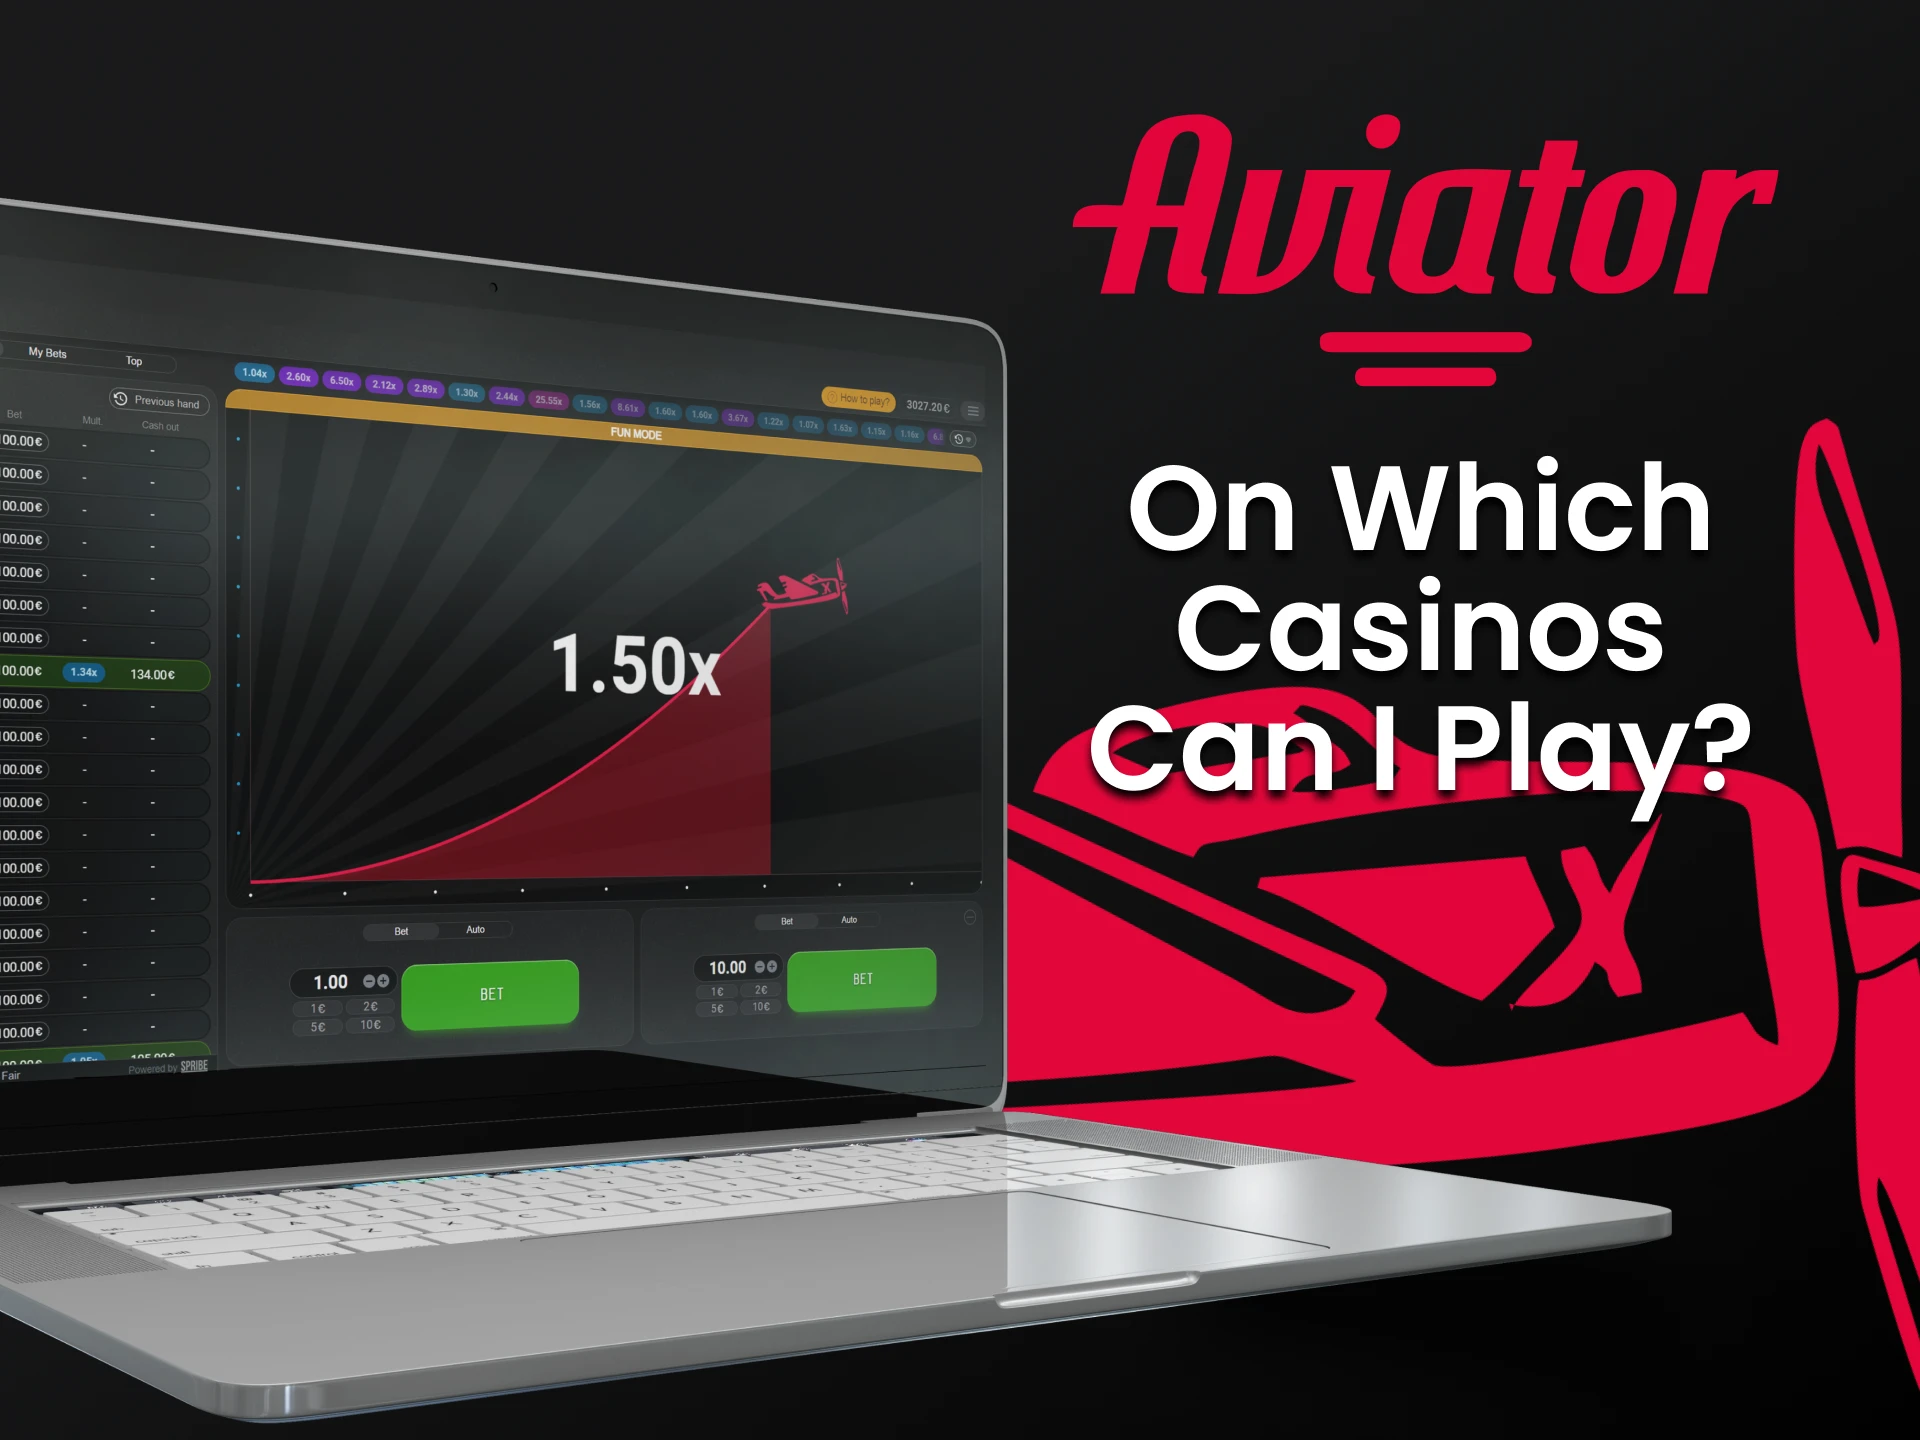 Escolha um casino conveniente para jogar Aviator.